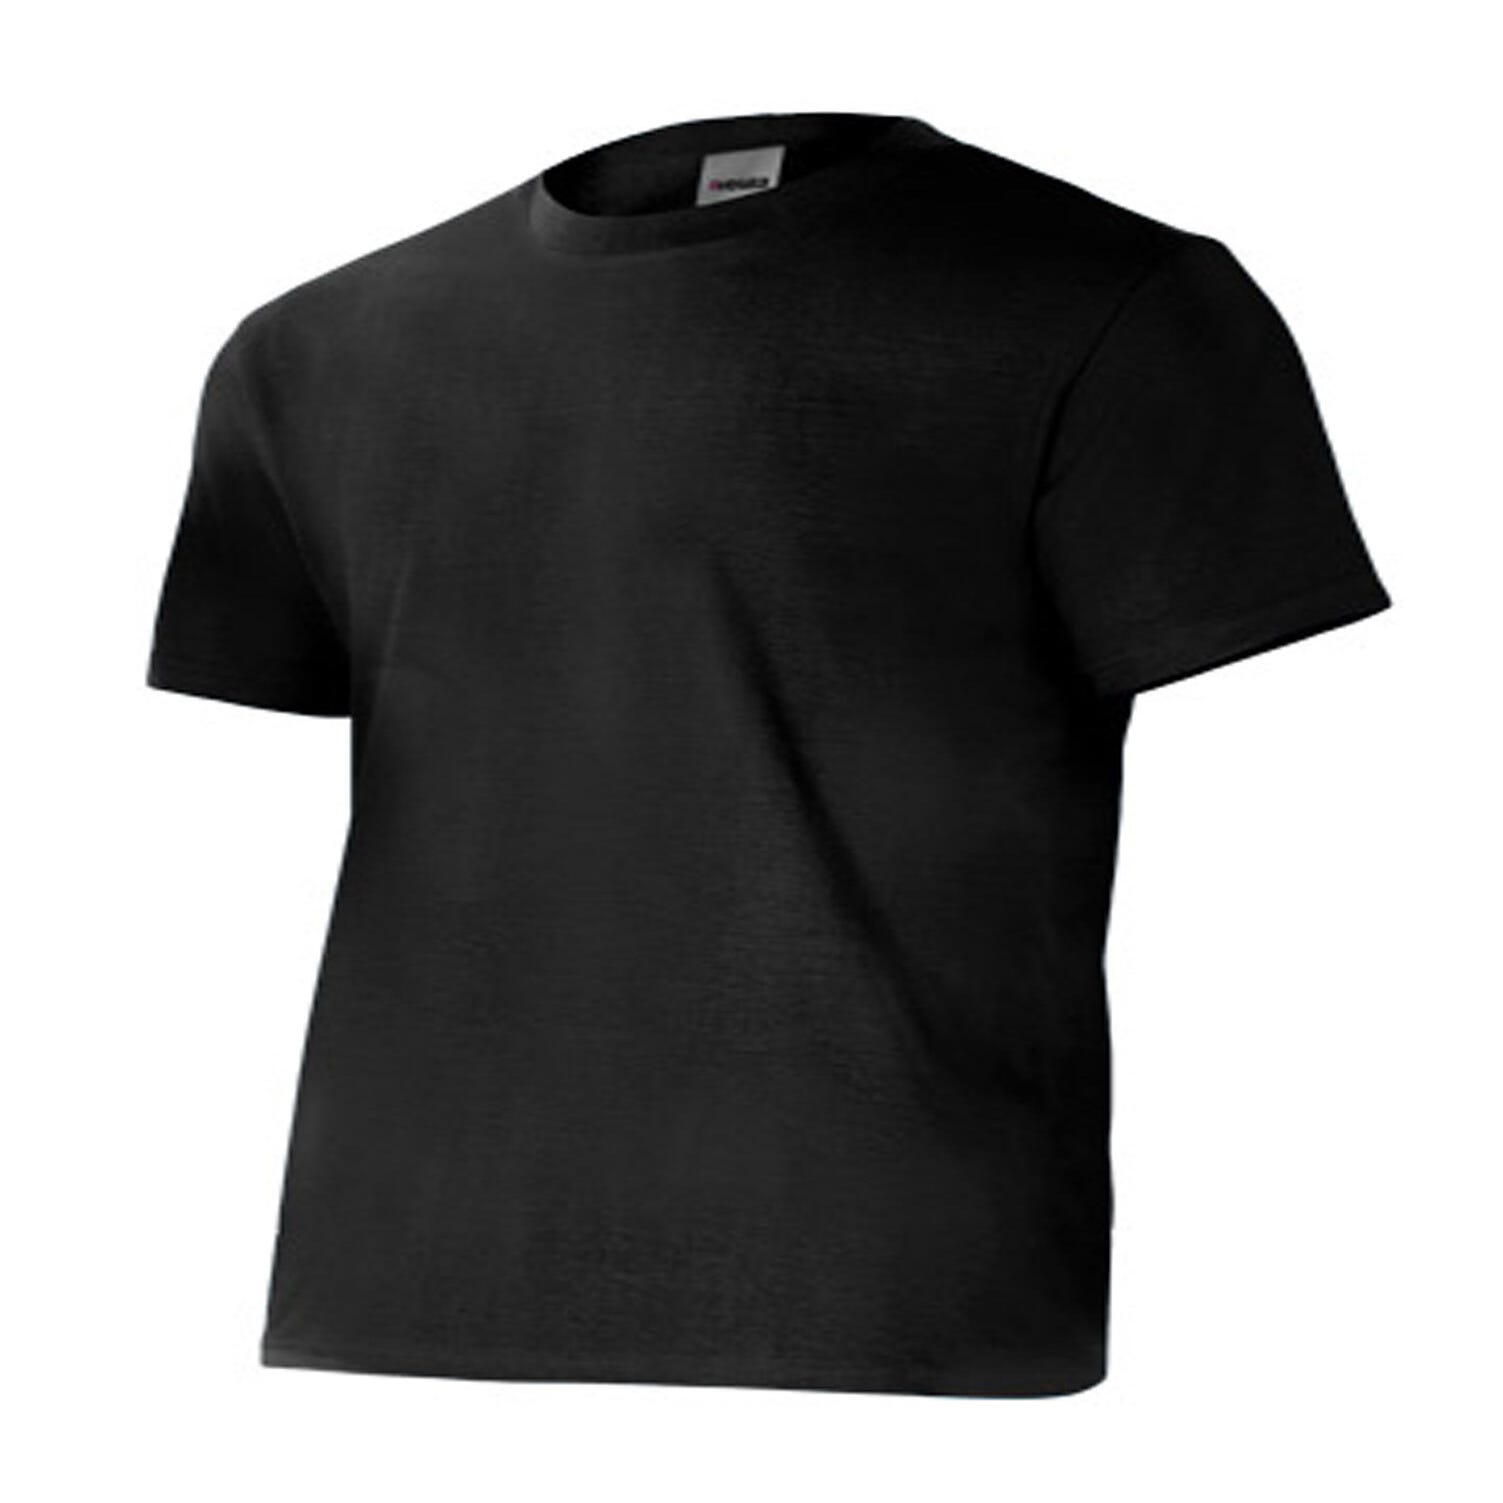 Camiseta manga corta negro s